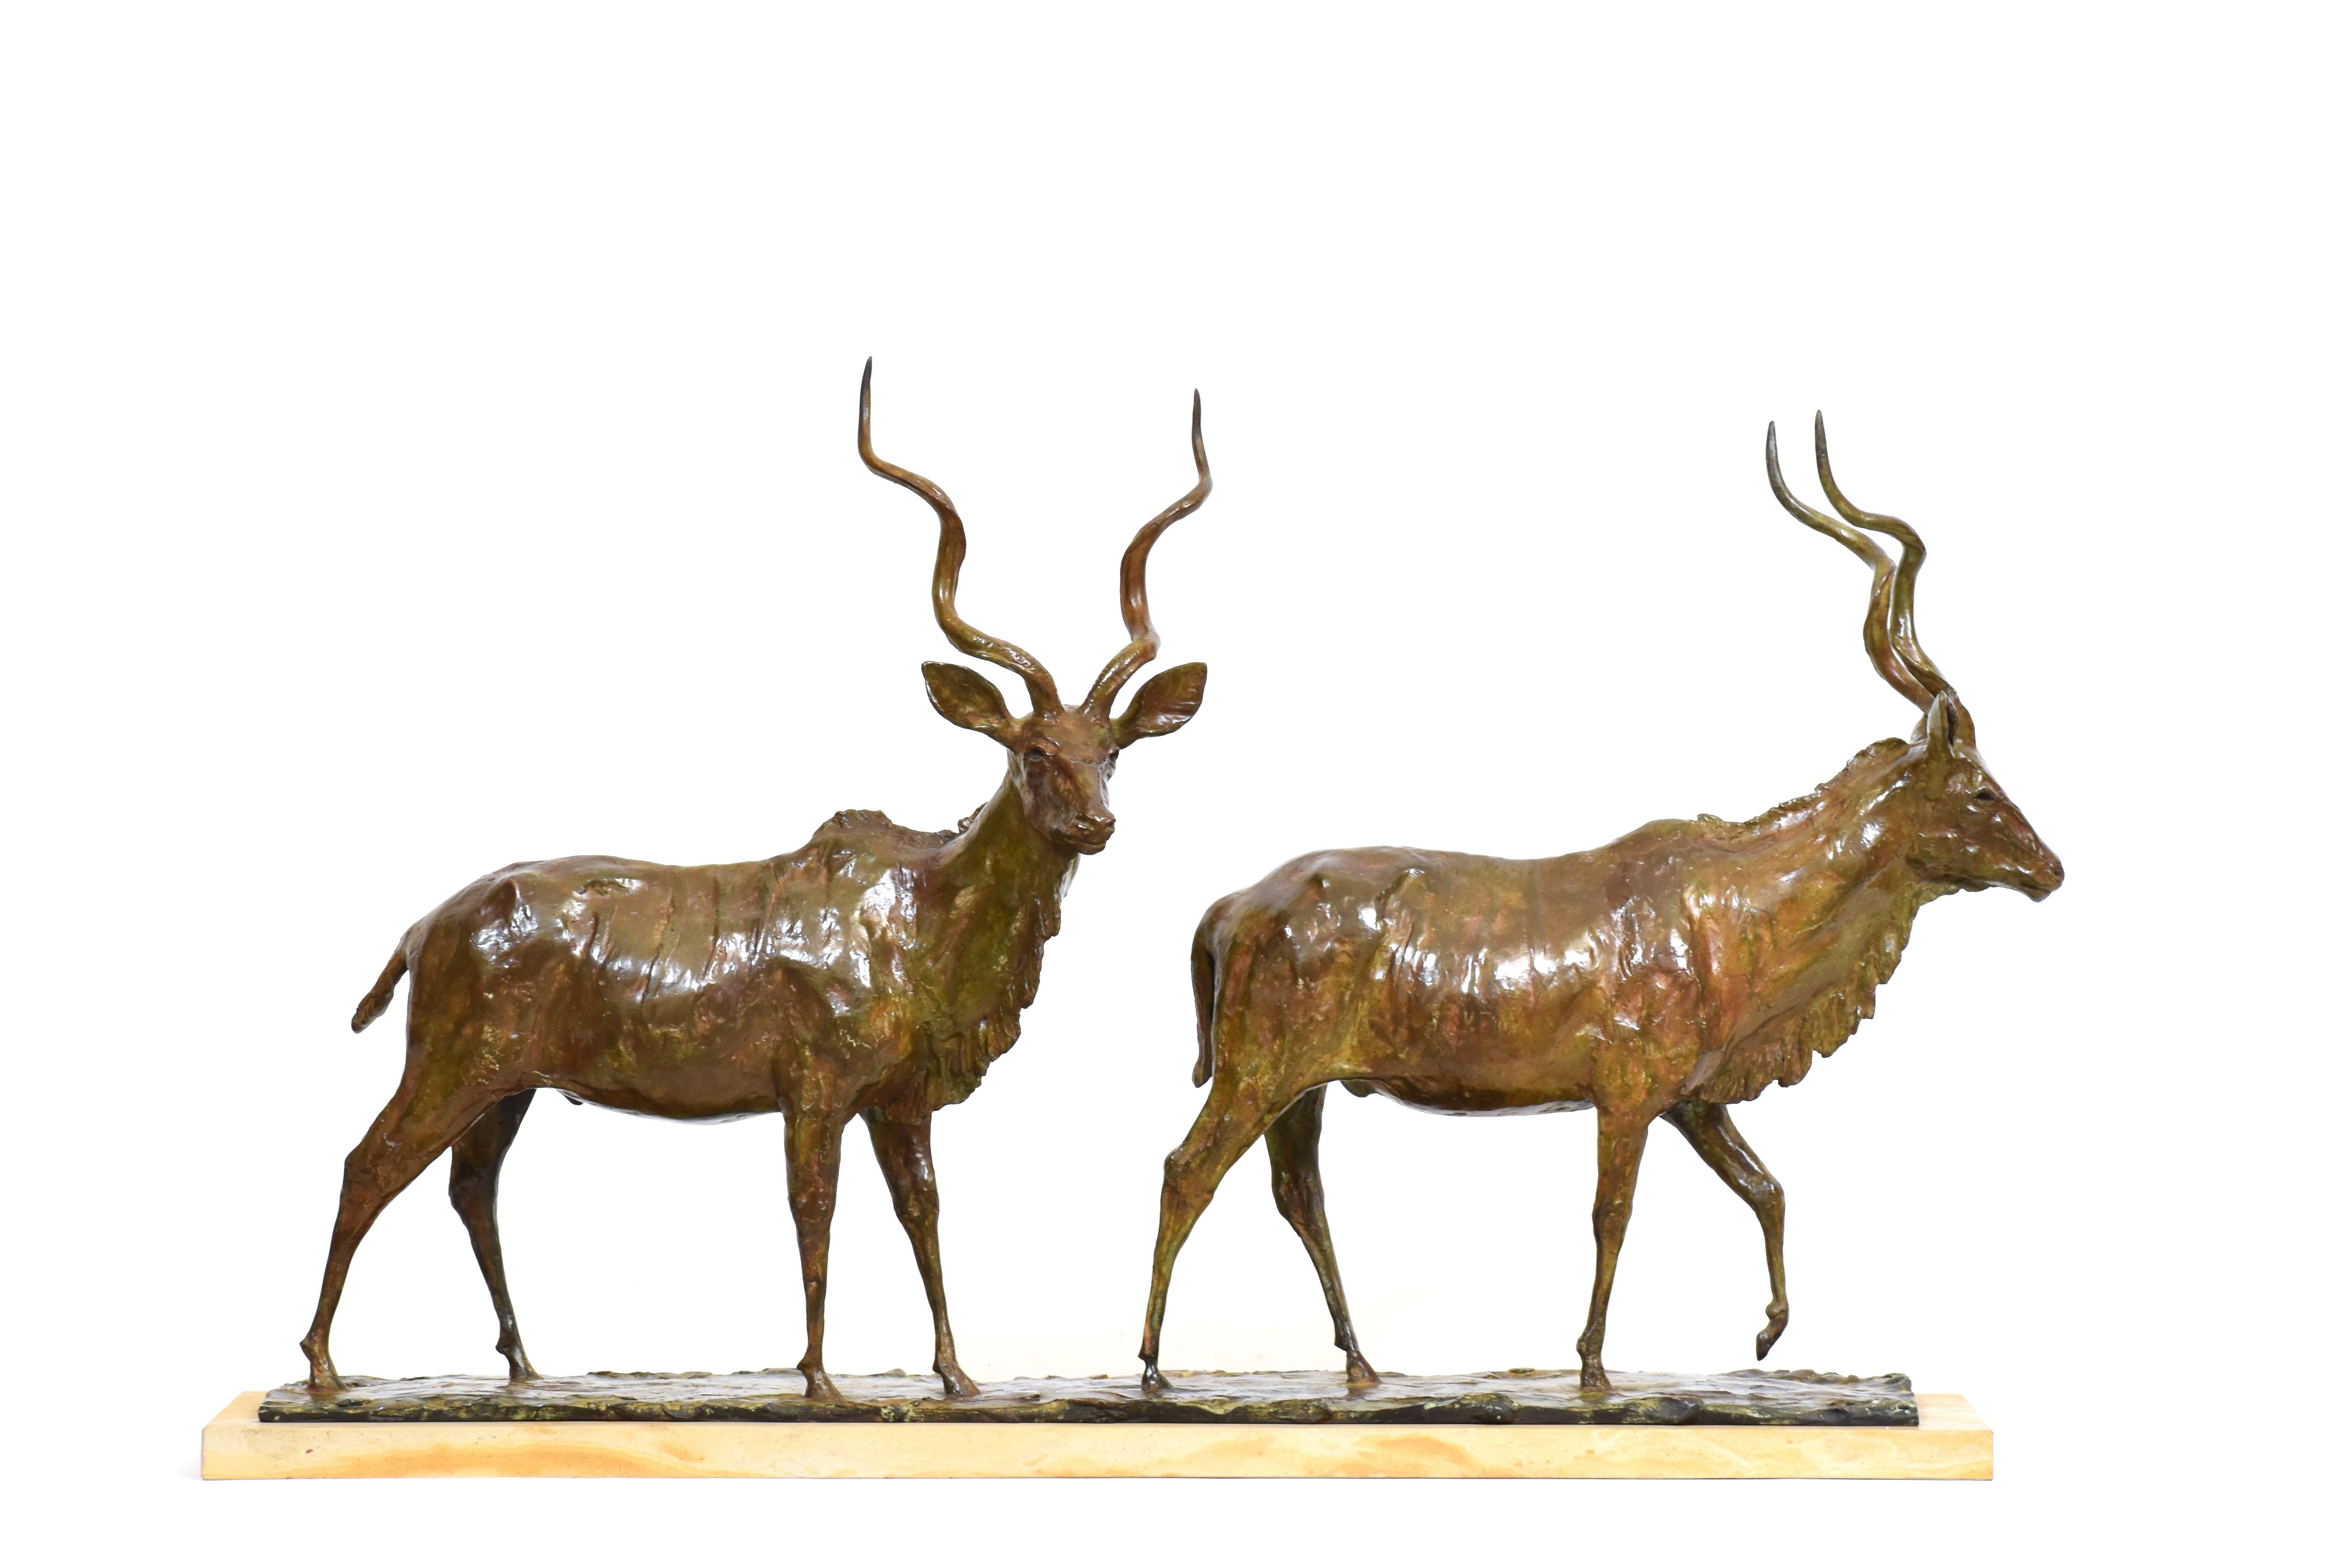 Heinrich Filter Figurative Sculpture – Going to the River - Bronze Kudu Bulls - Afrikanische Antelope Bronzeskulptur 